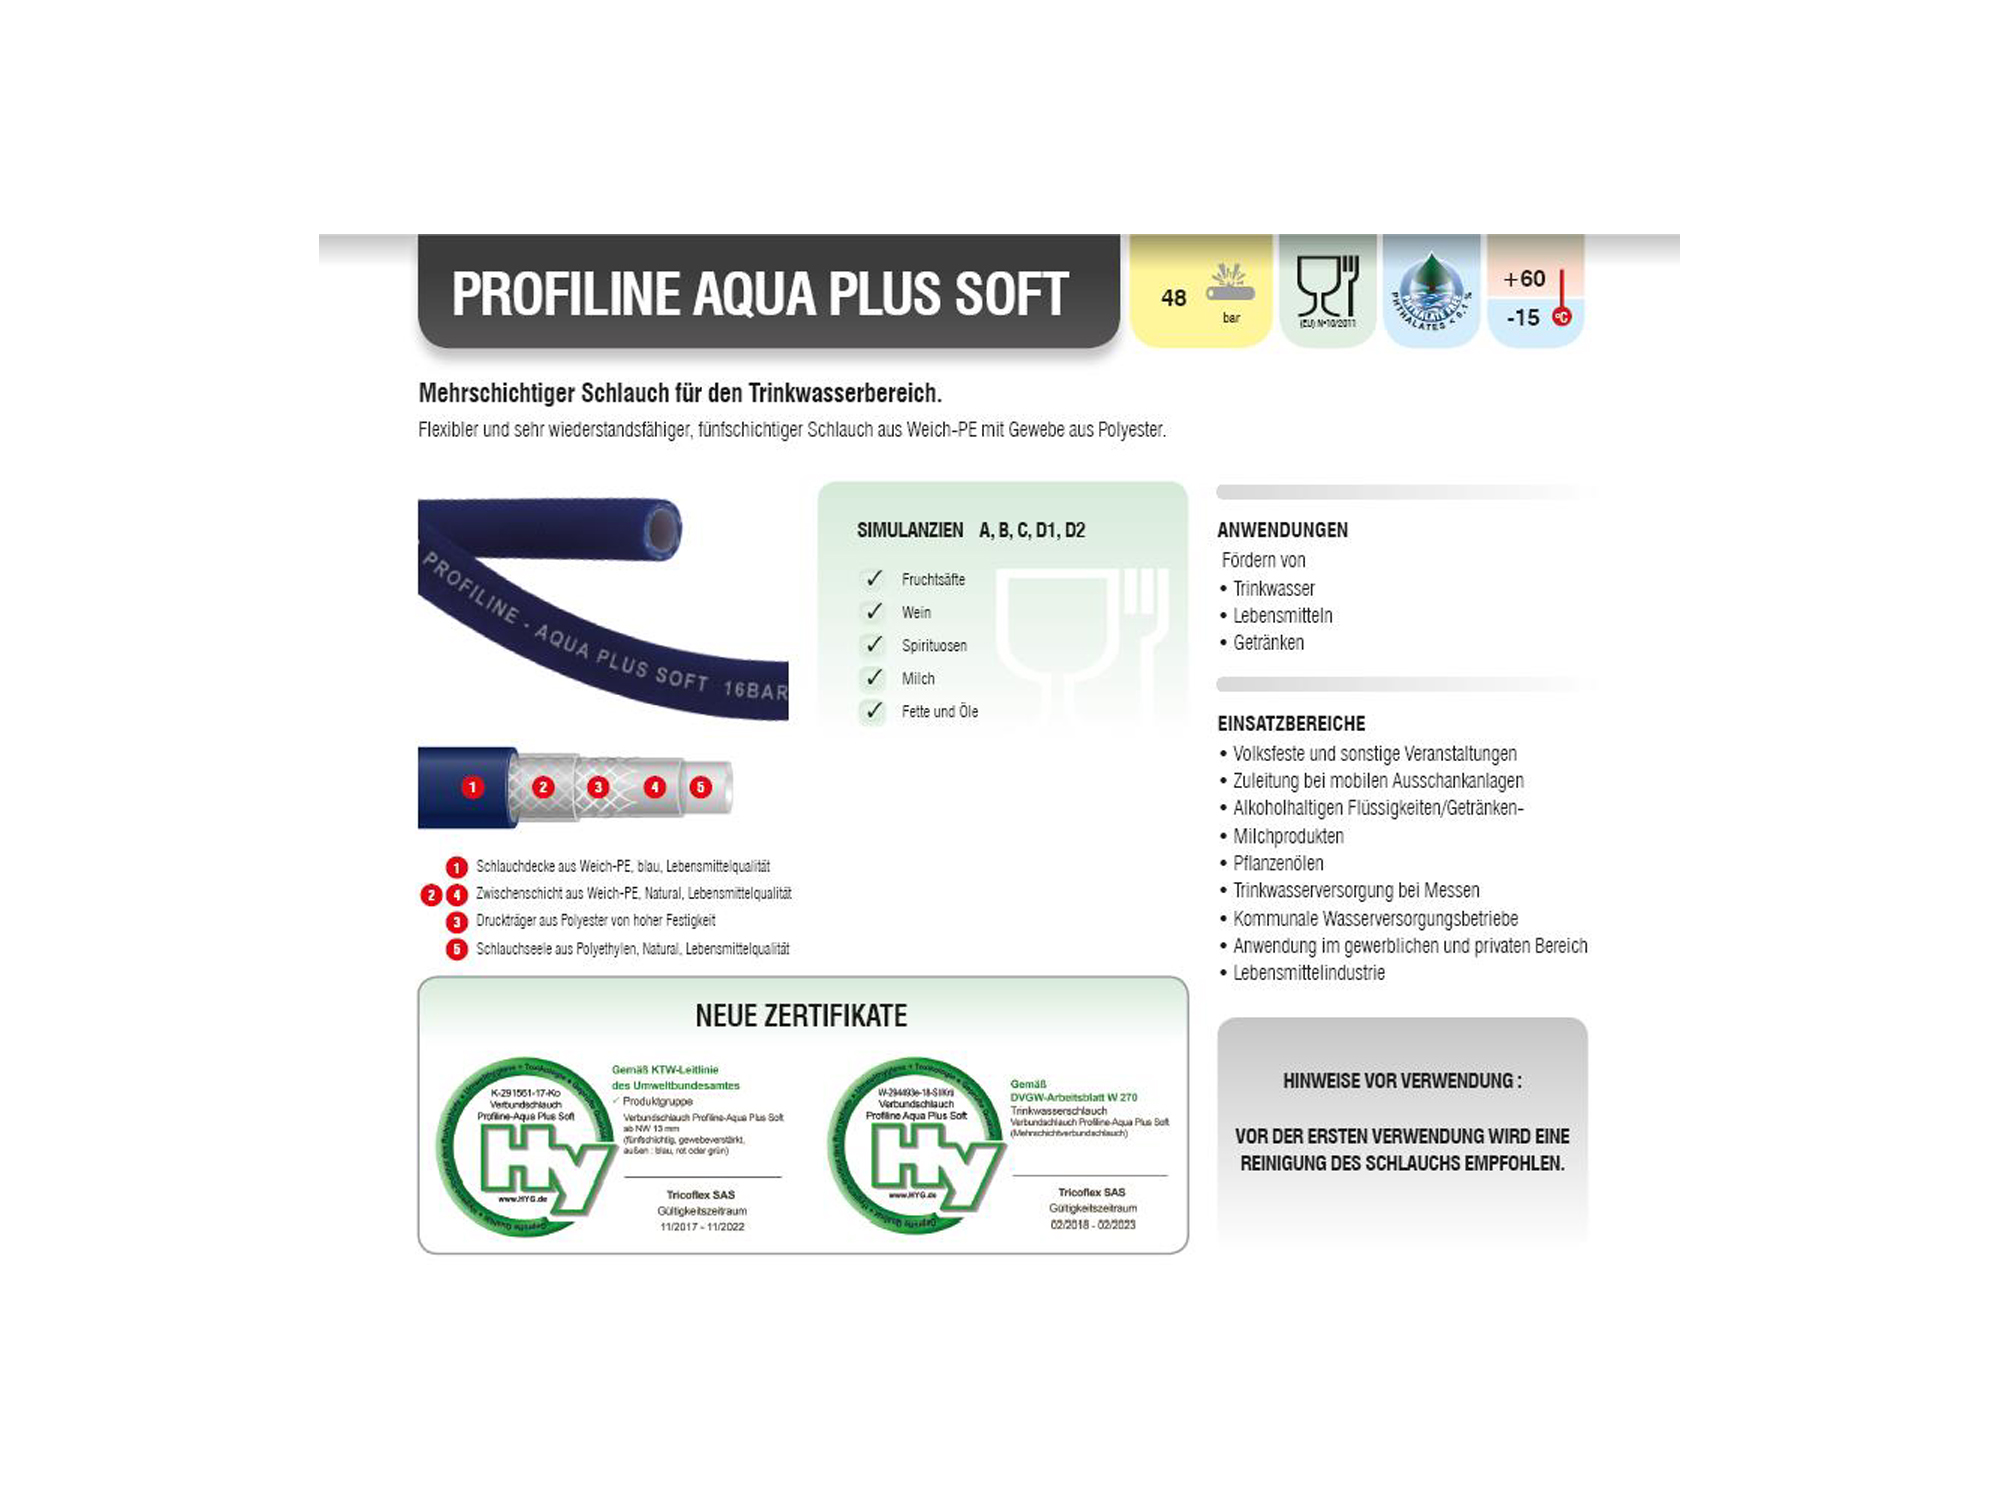 Profiline-Aqua Plus Soft 25mm (1") als Meterware, 5m - 50m Länge, Trinkwasserschlauch nach KTW-A, W270 